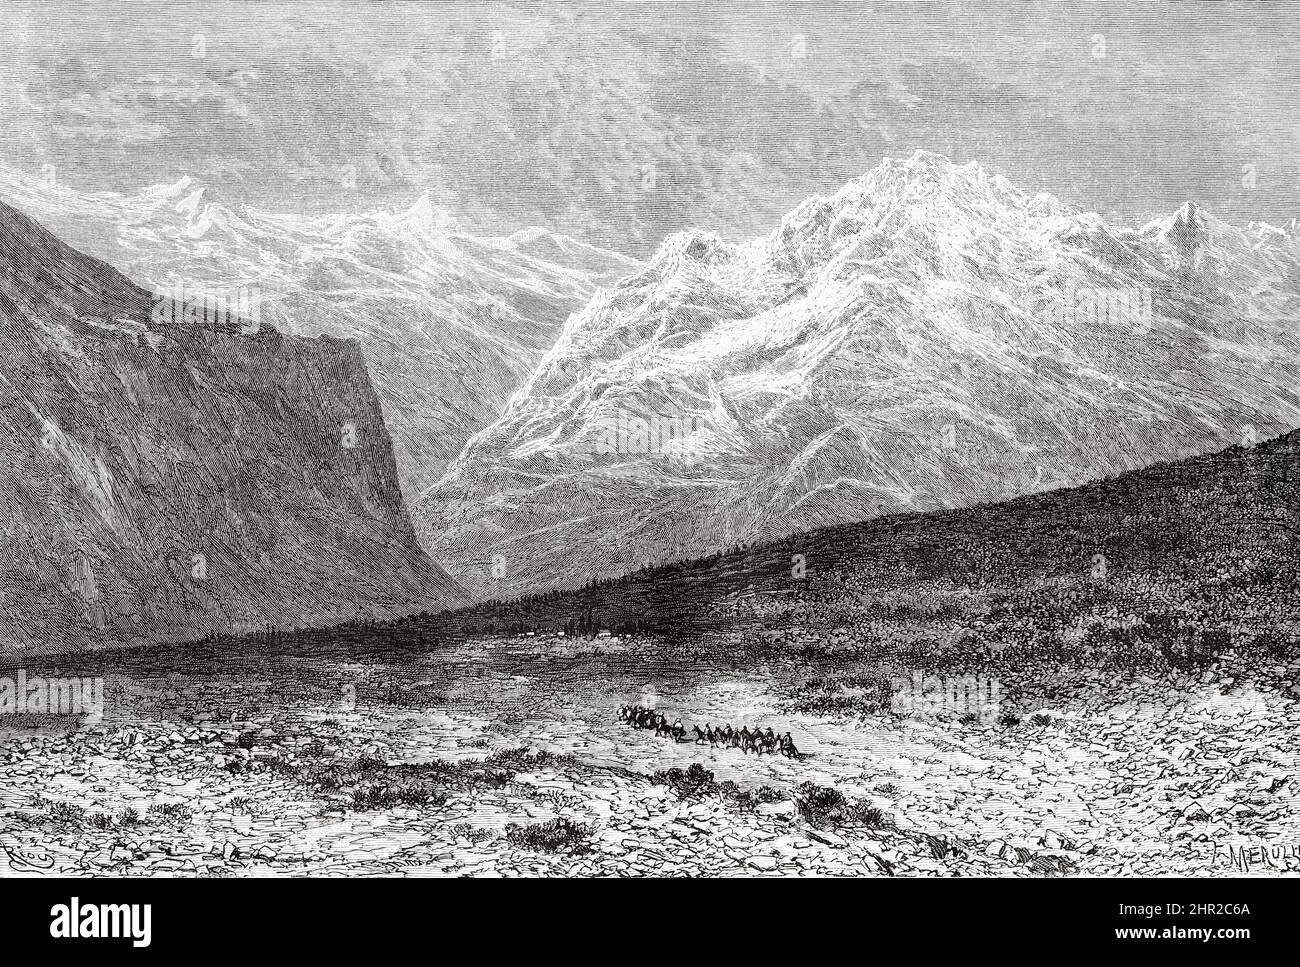 Roadtrip durch die Anden rund um Uspallata, Argentinien. Südamerika. Durch die Pampas und die Cordillera, von Montevideo nach Santa Rosa (Chile) von Desiré Charnay, 1876 Stockfoto